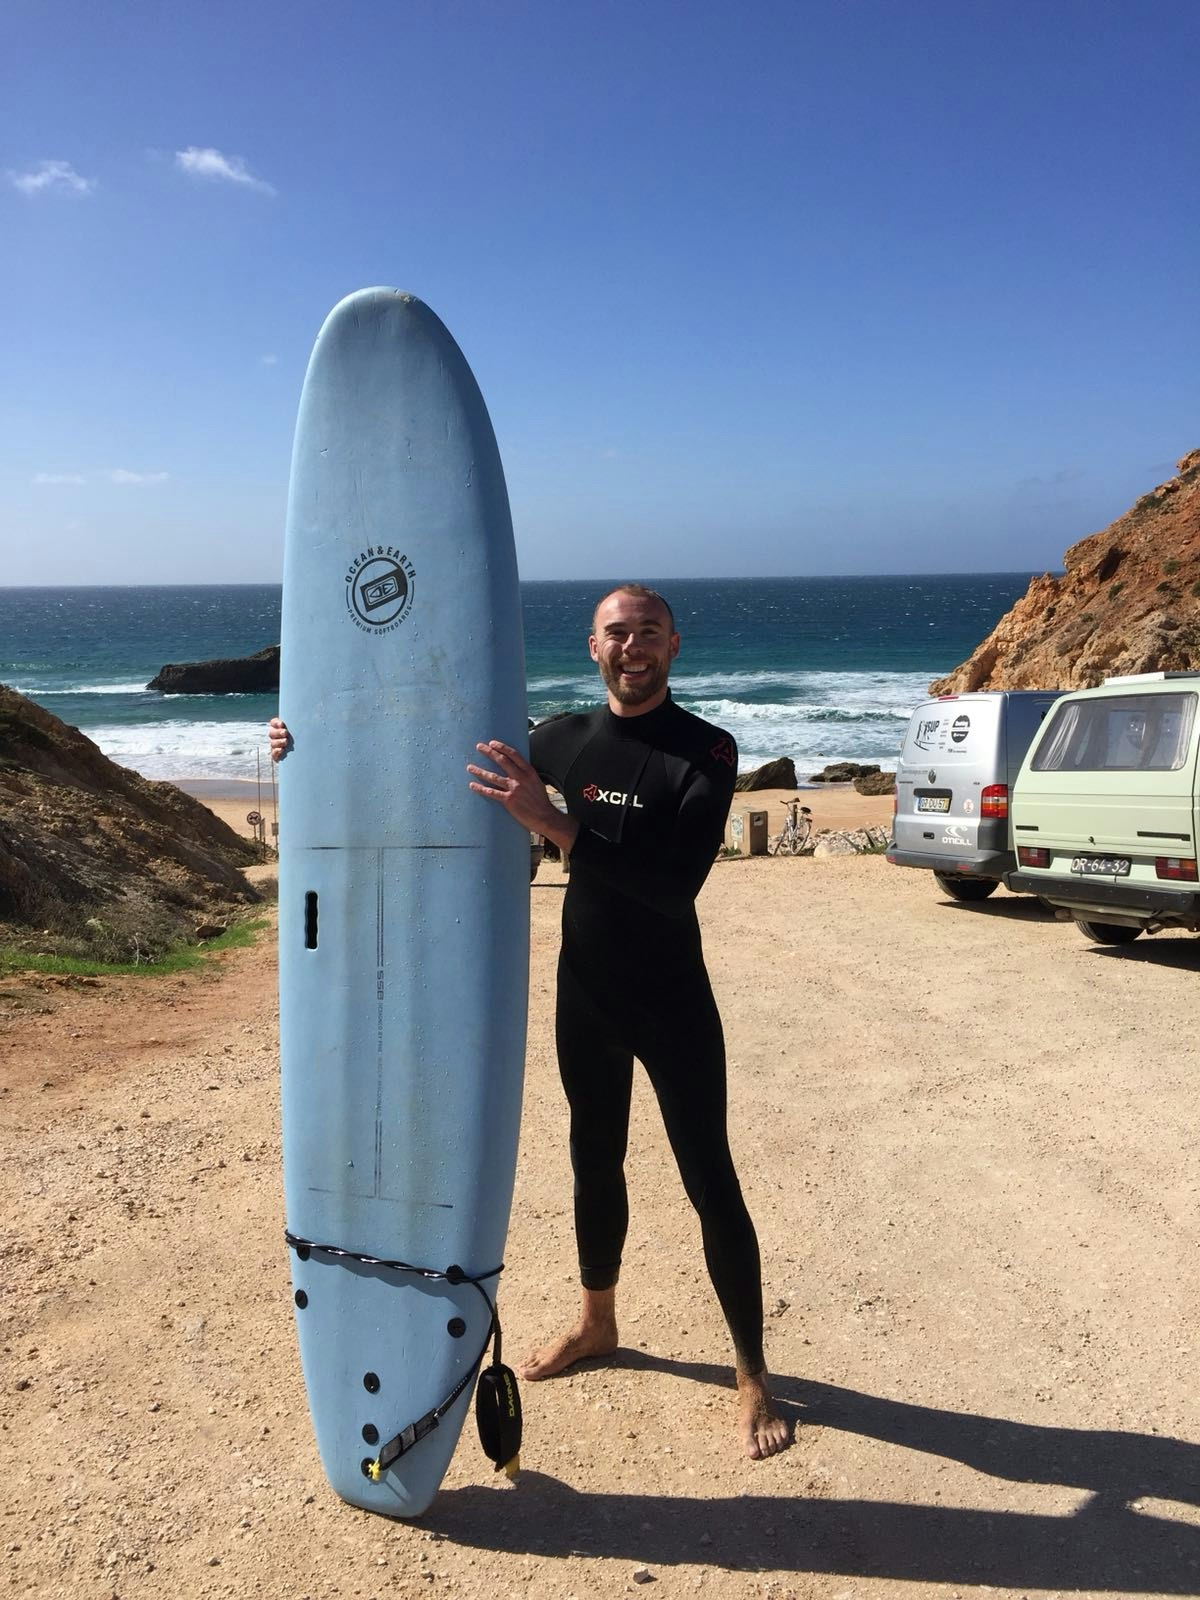 Författaren Tom bär en våtdräkt och håller en surfbräda, med steniga klippor, stranden och Atlanten bakom sig. 